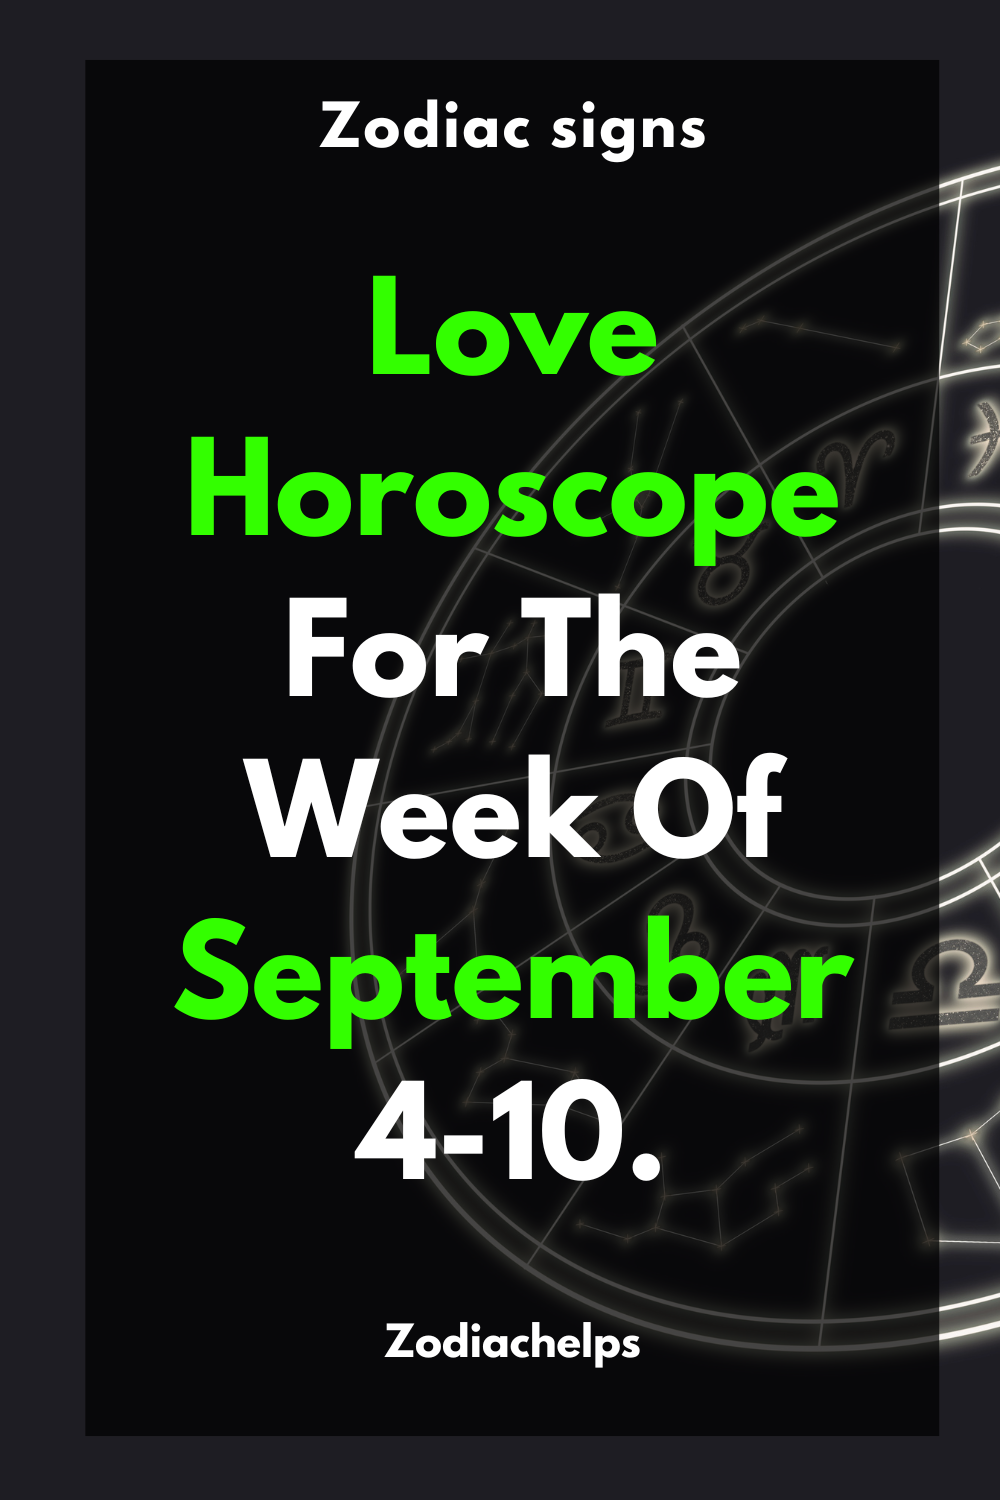 Love Horoscope For The Week Of September 4-10.